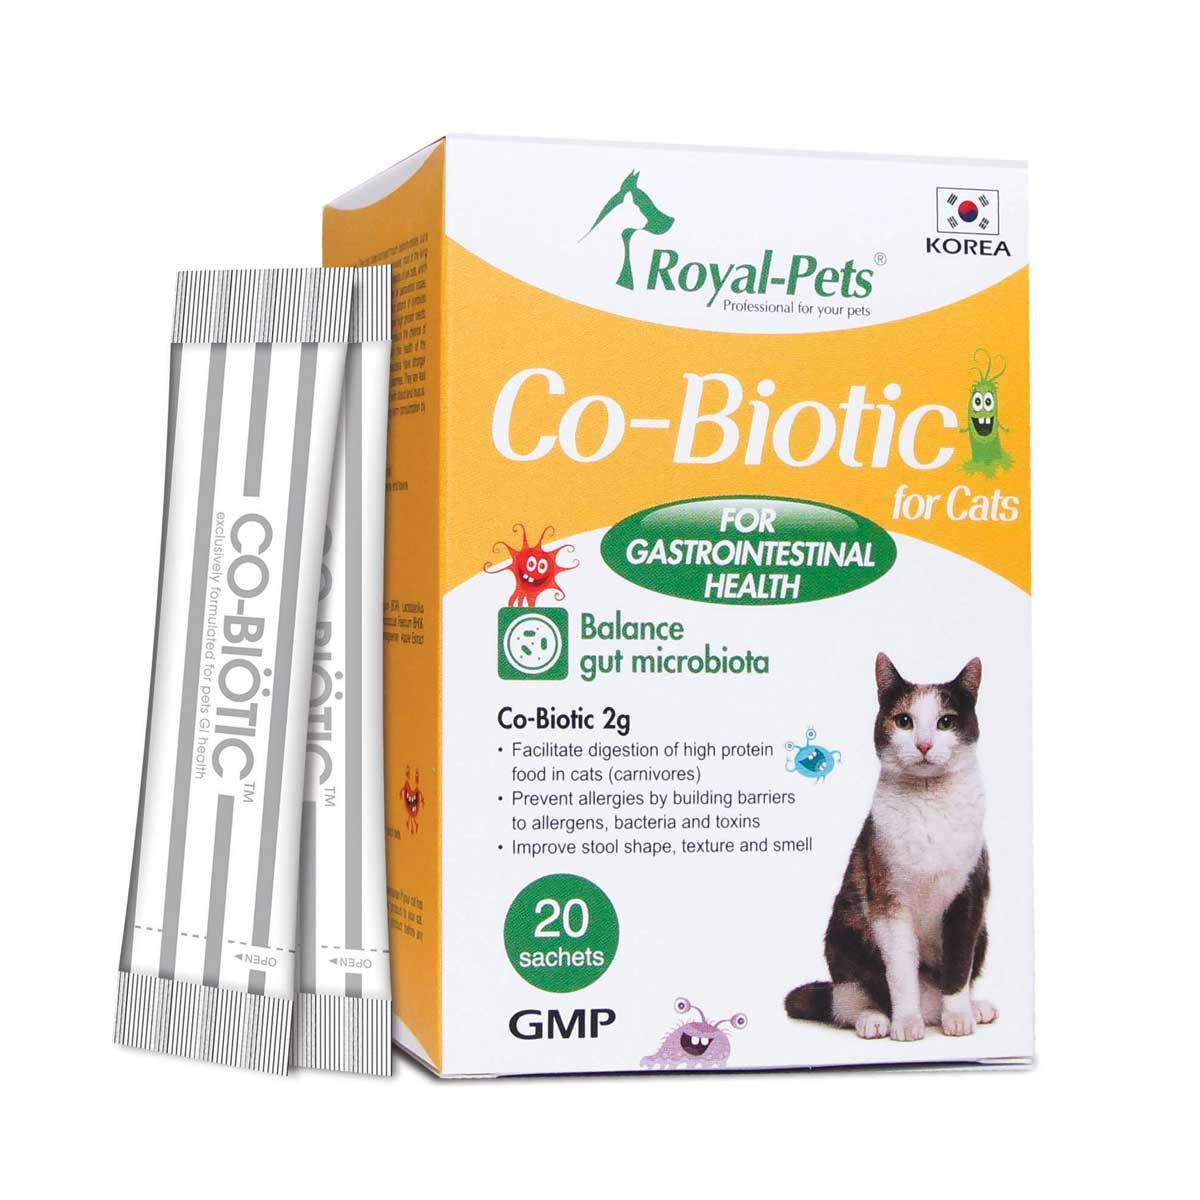 MAMA730 Royal-Pets Co-Biotic 貓用腸胃益生素 20小包 Royal-Pets Co-Biotic for Cats 20 sachets